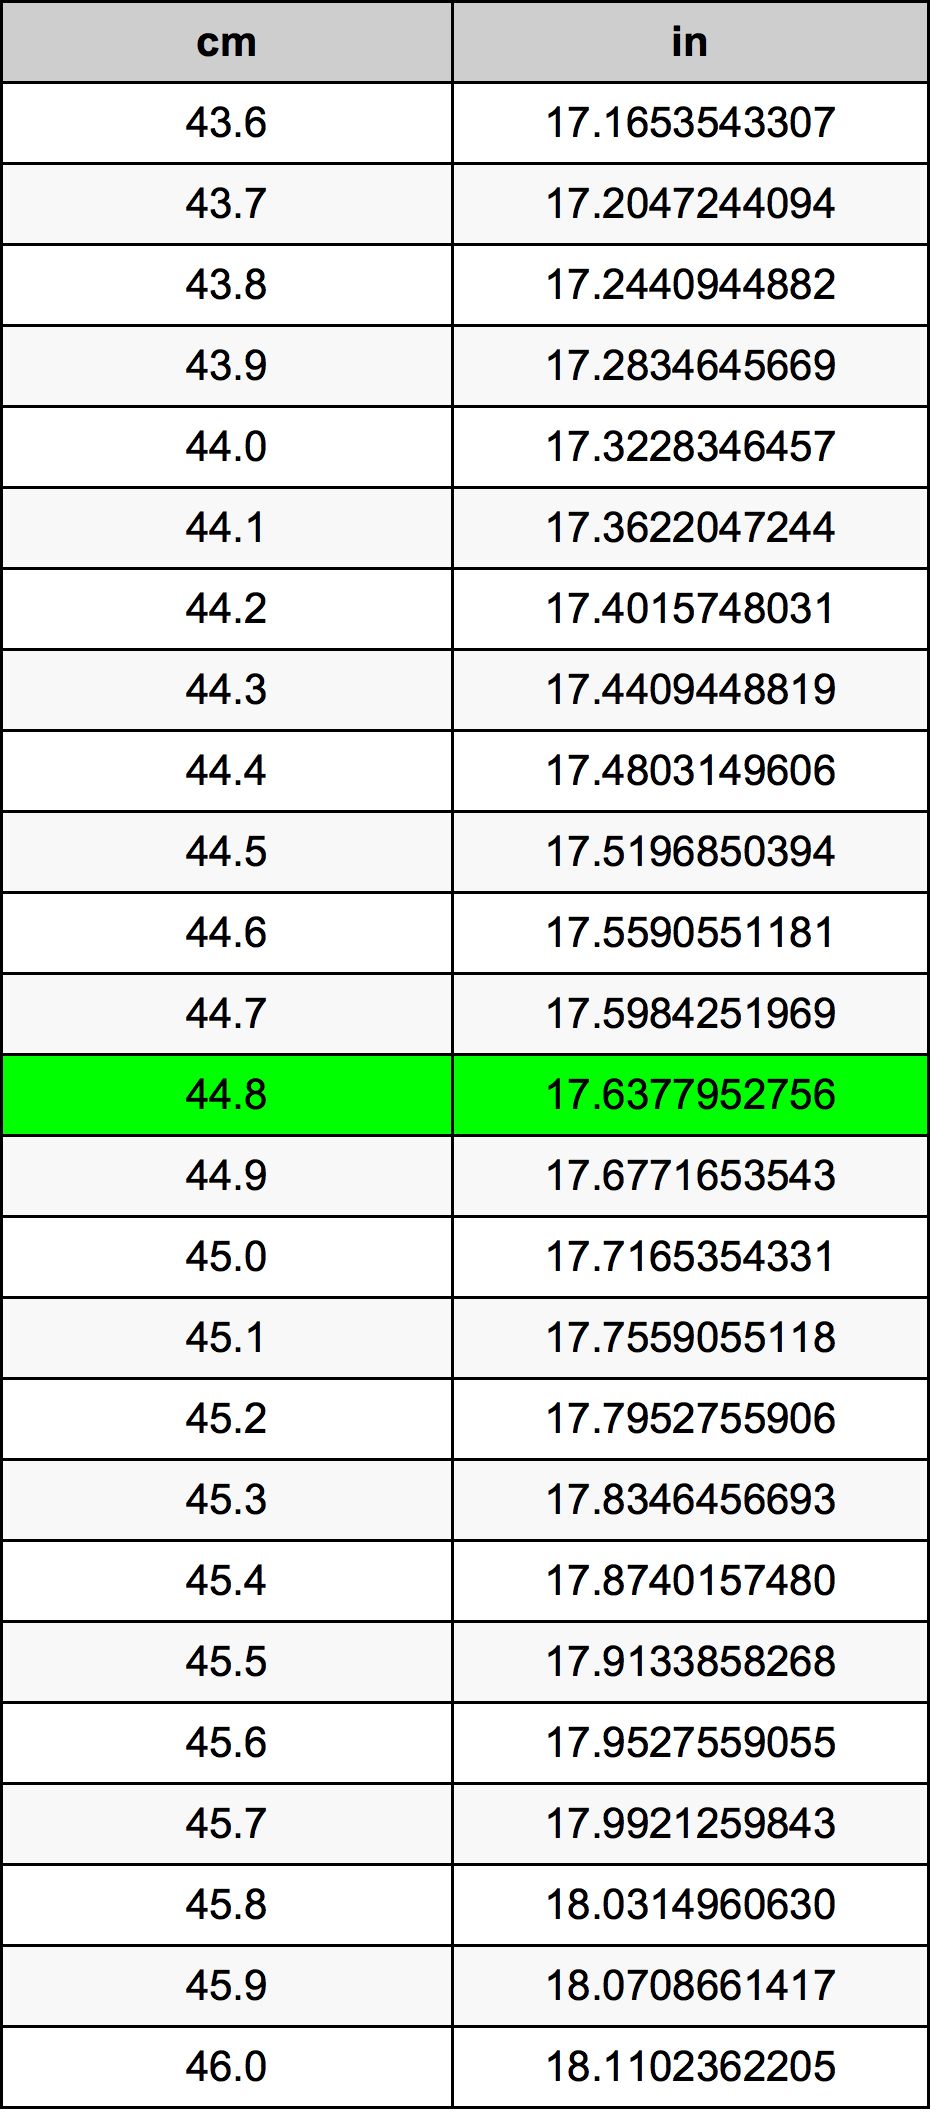 44.8 Centiméter átszámítási táblázat